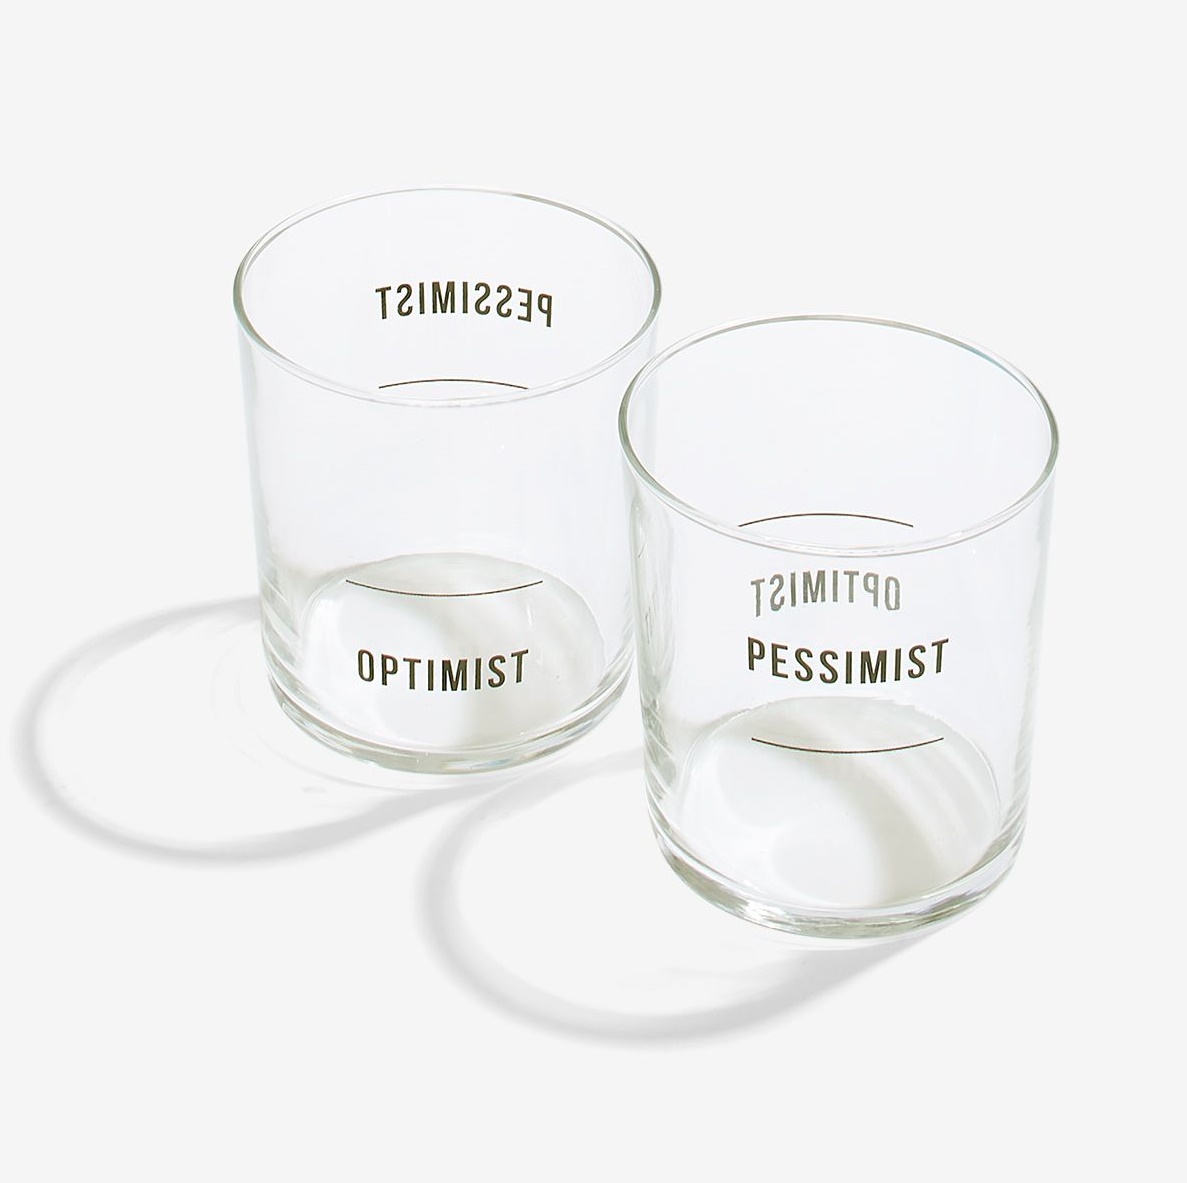 Optimist / pessimist glasses set of 2